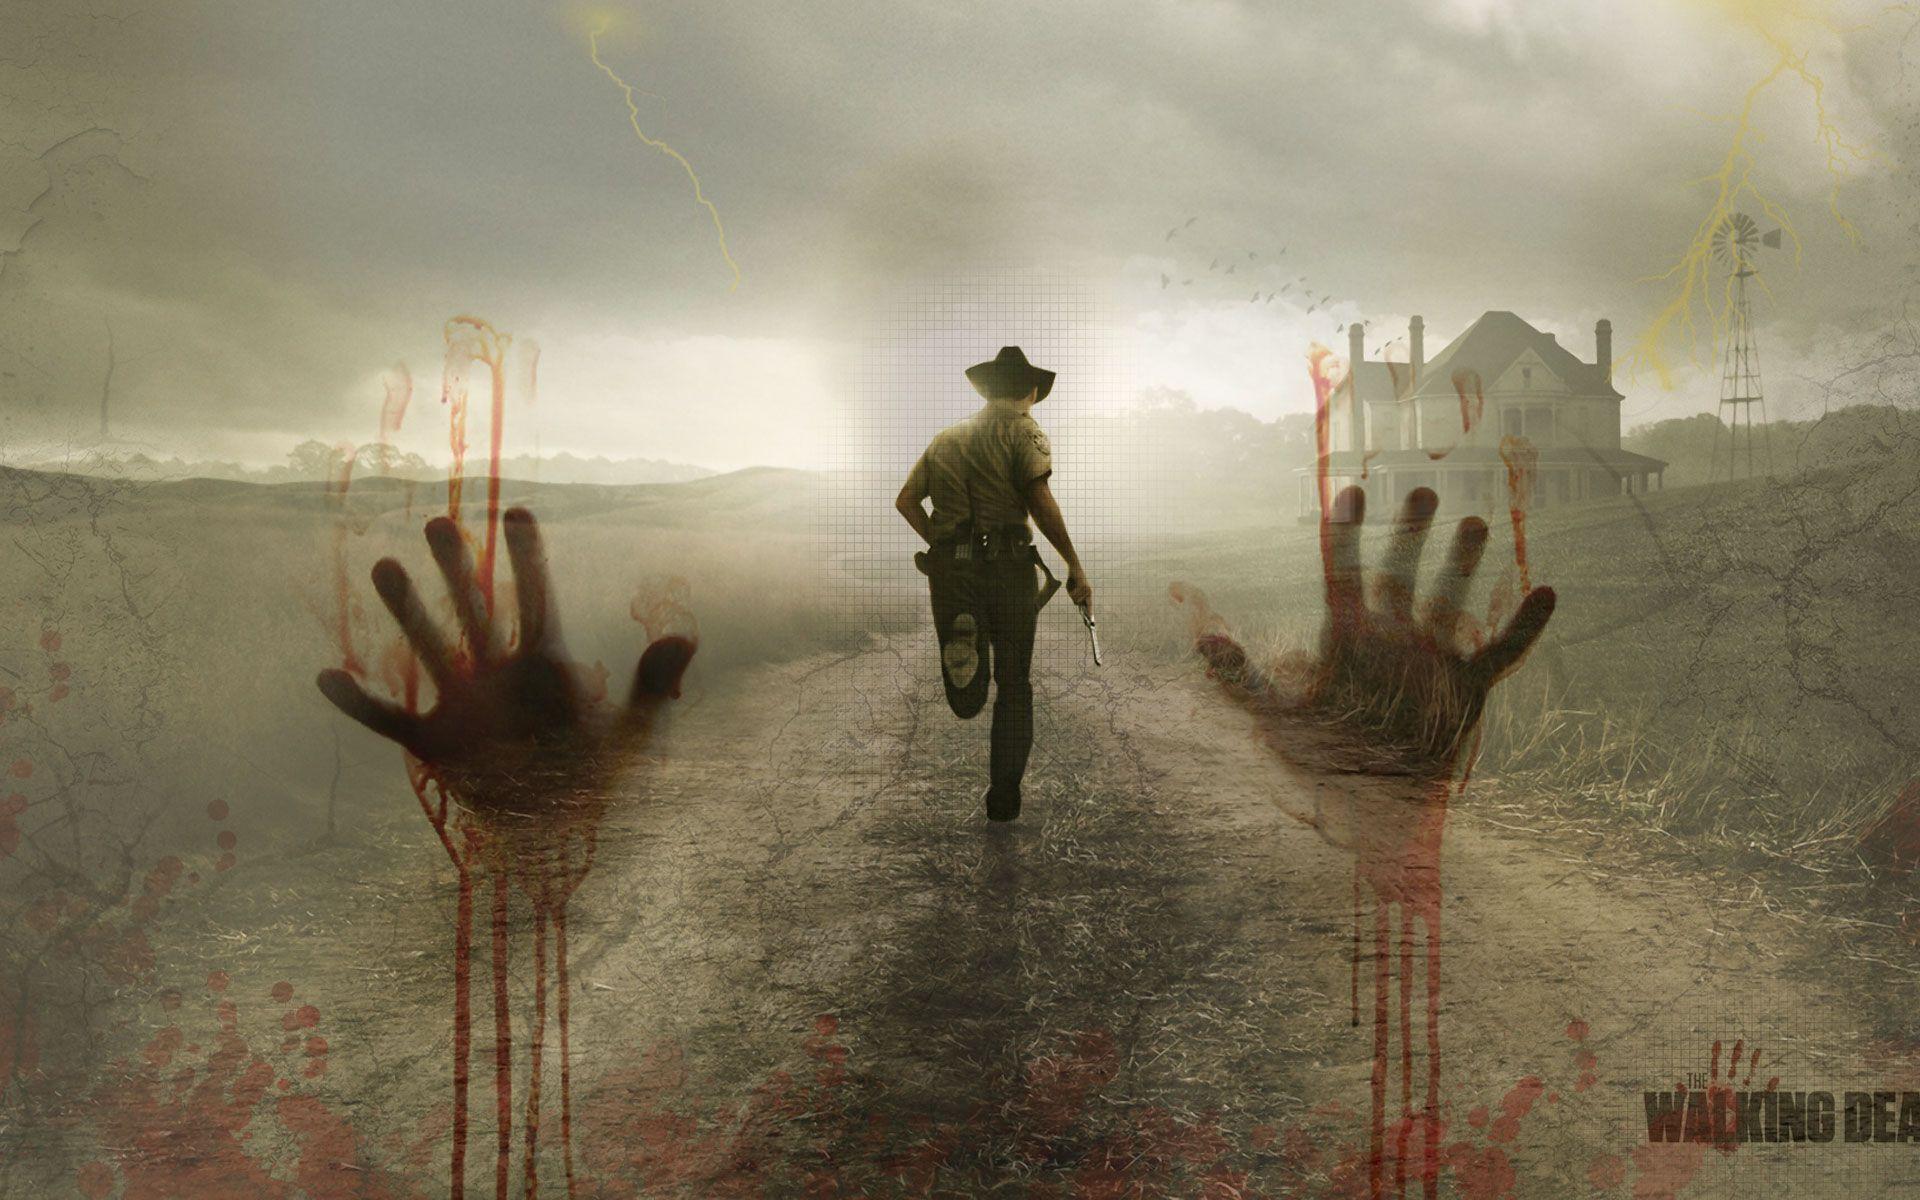 Walking Dead - HD Wallpaper 